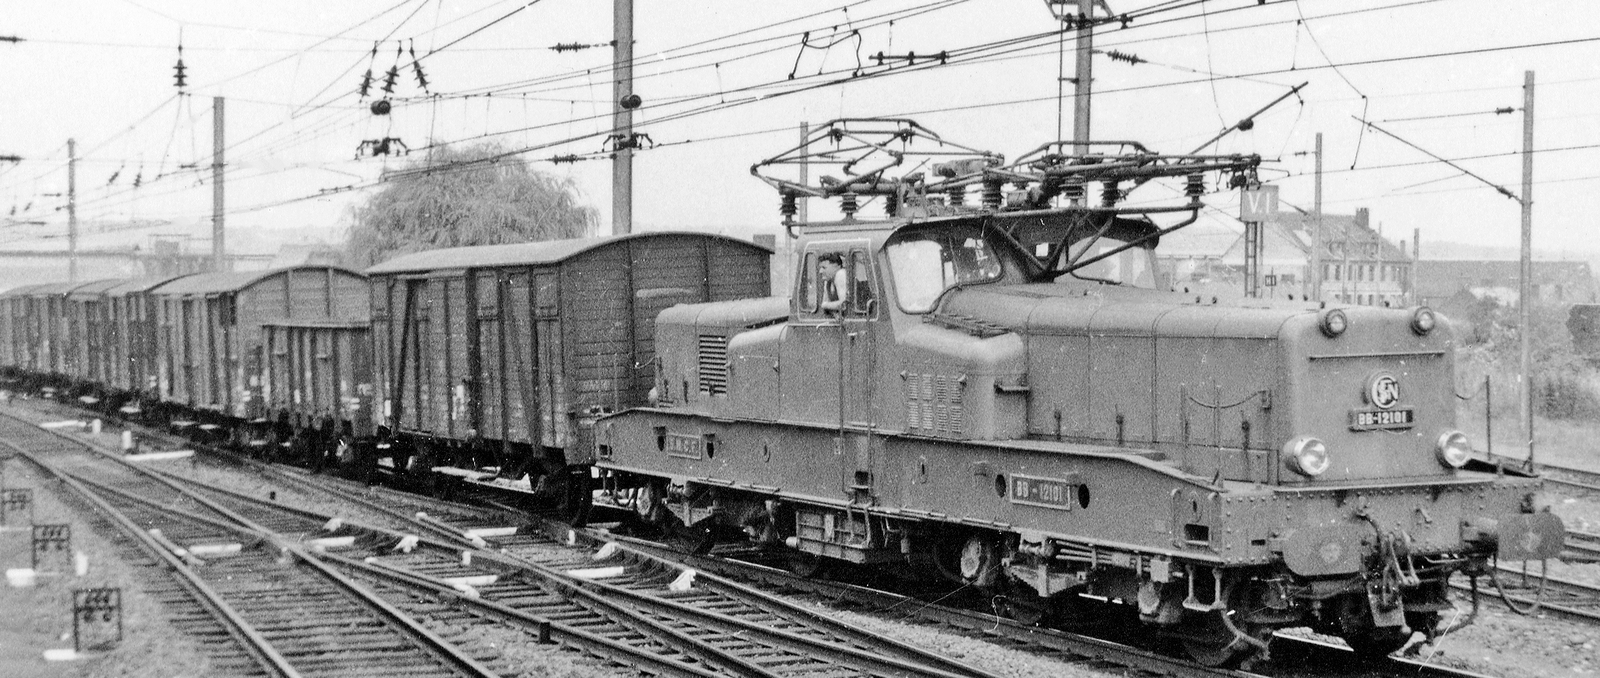 BB 12101 in September 1958 on the Lille-Aulnoye-Metz line